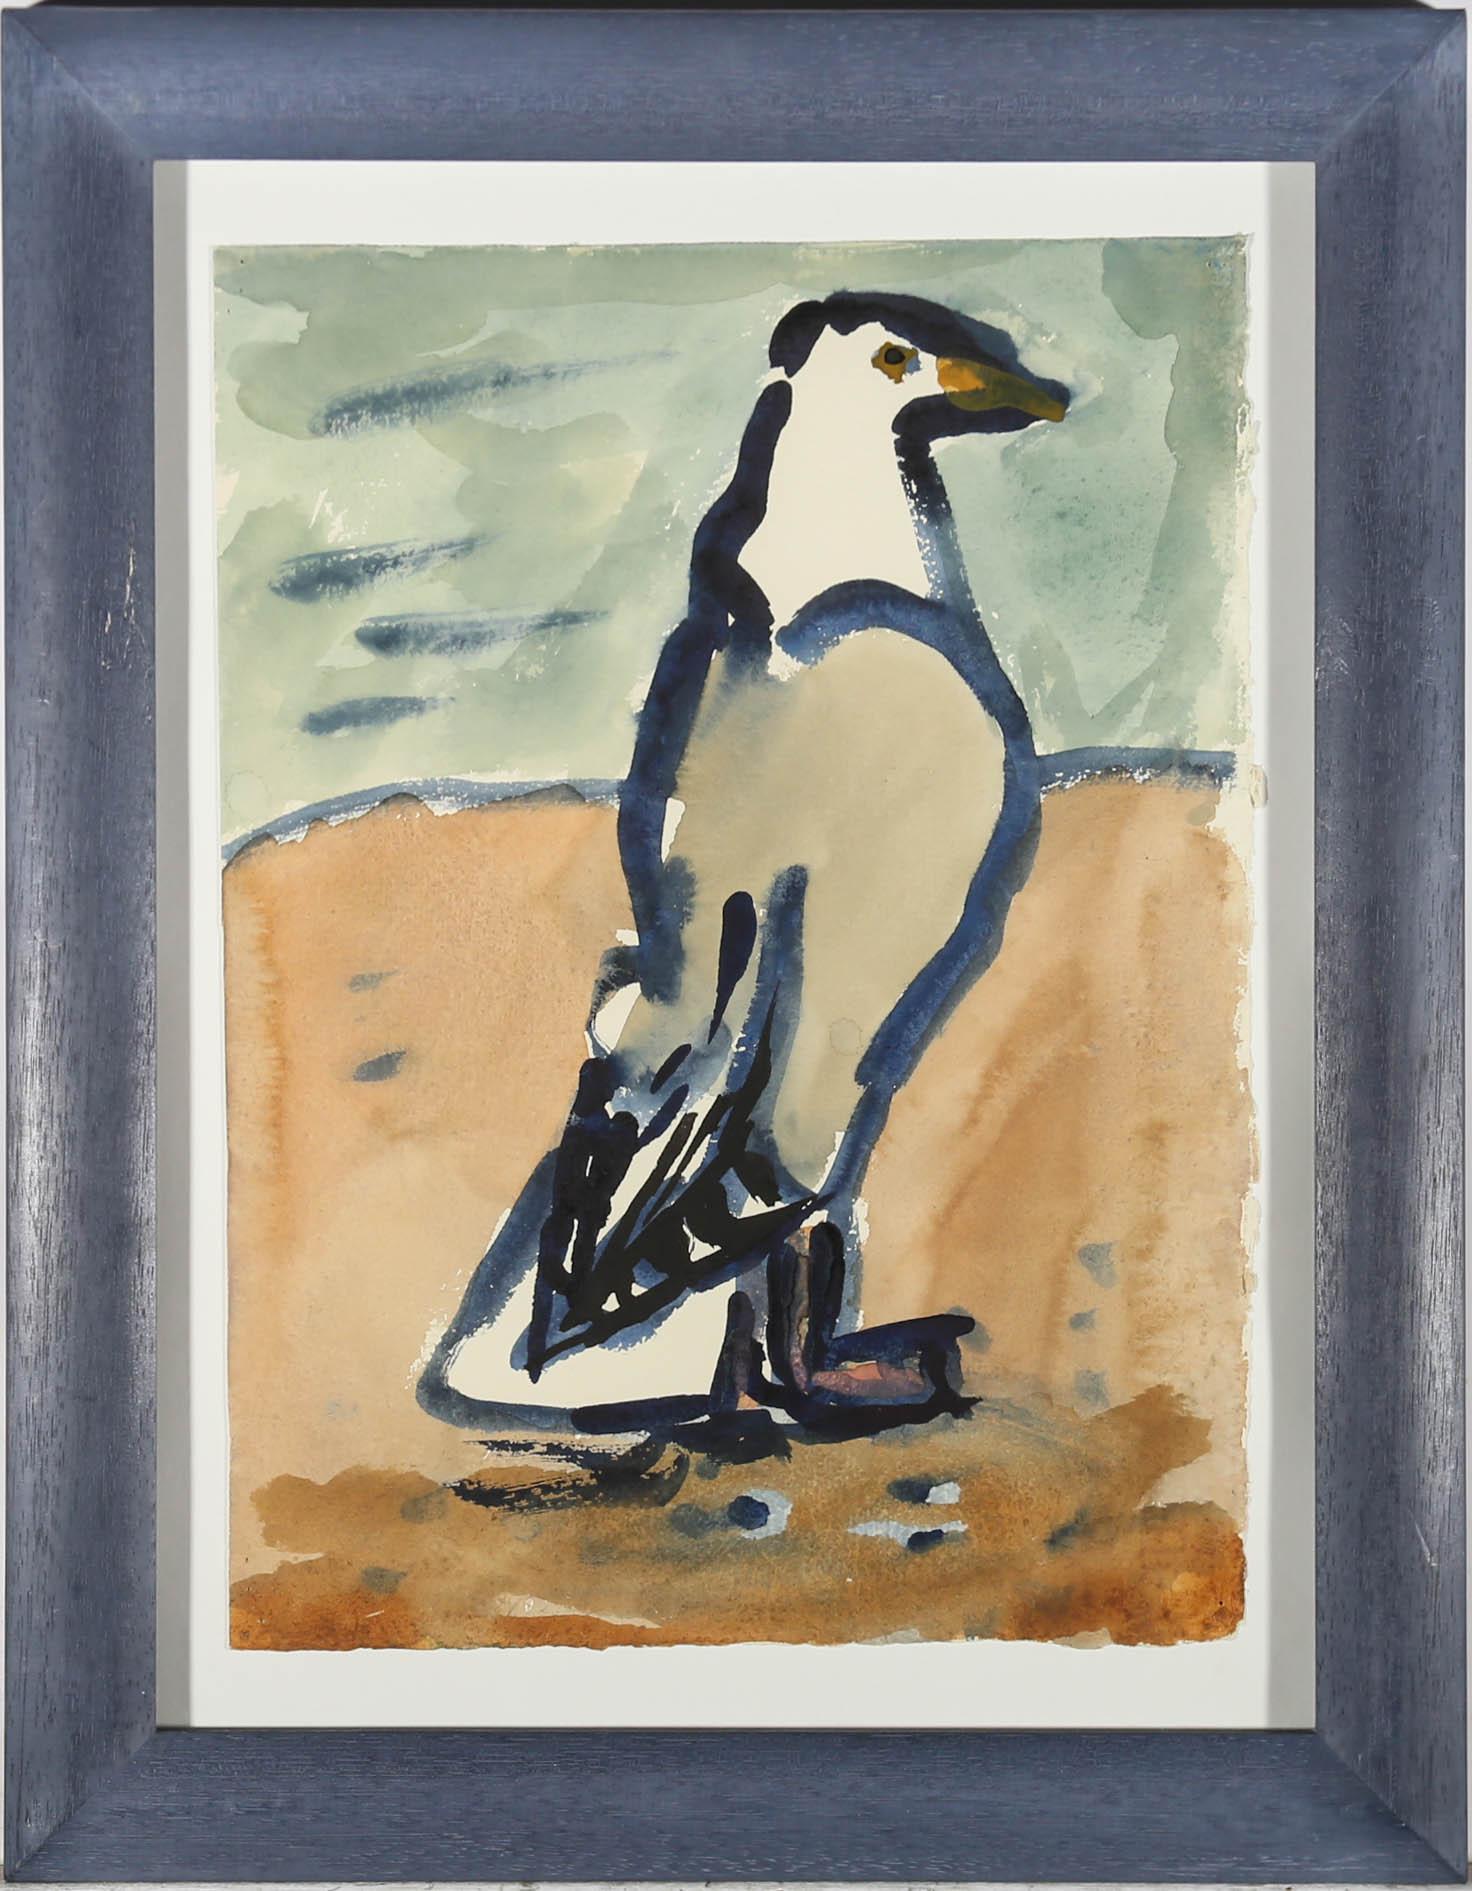 Ein Originalaquarell des zeitgenössischen Künstlers Michael Davies (geb. 1947), das eine selbstbewusste Möwe zeigt, die aufrecht an einem Sandstrand steht. Schön montiert auf weißem Karton in einem passenden Rahmen aus gebeiztem Holz. Signiert,